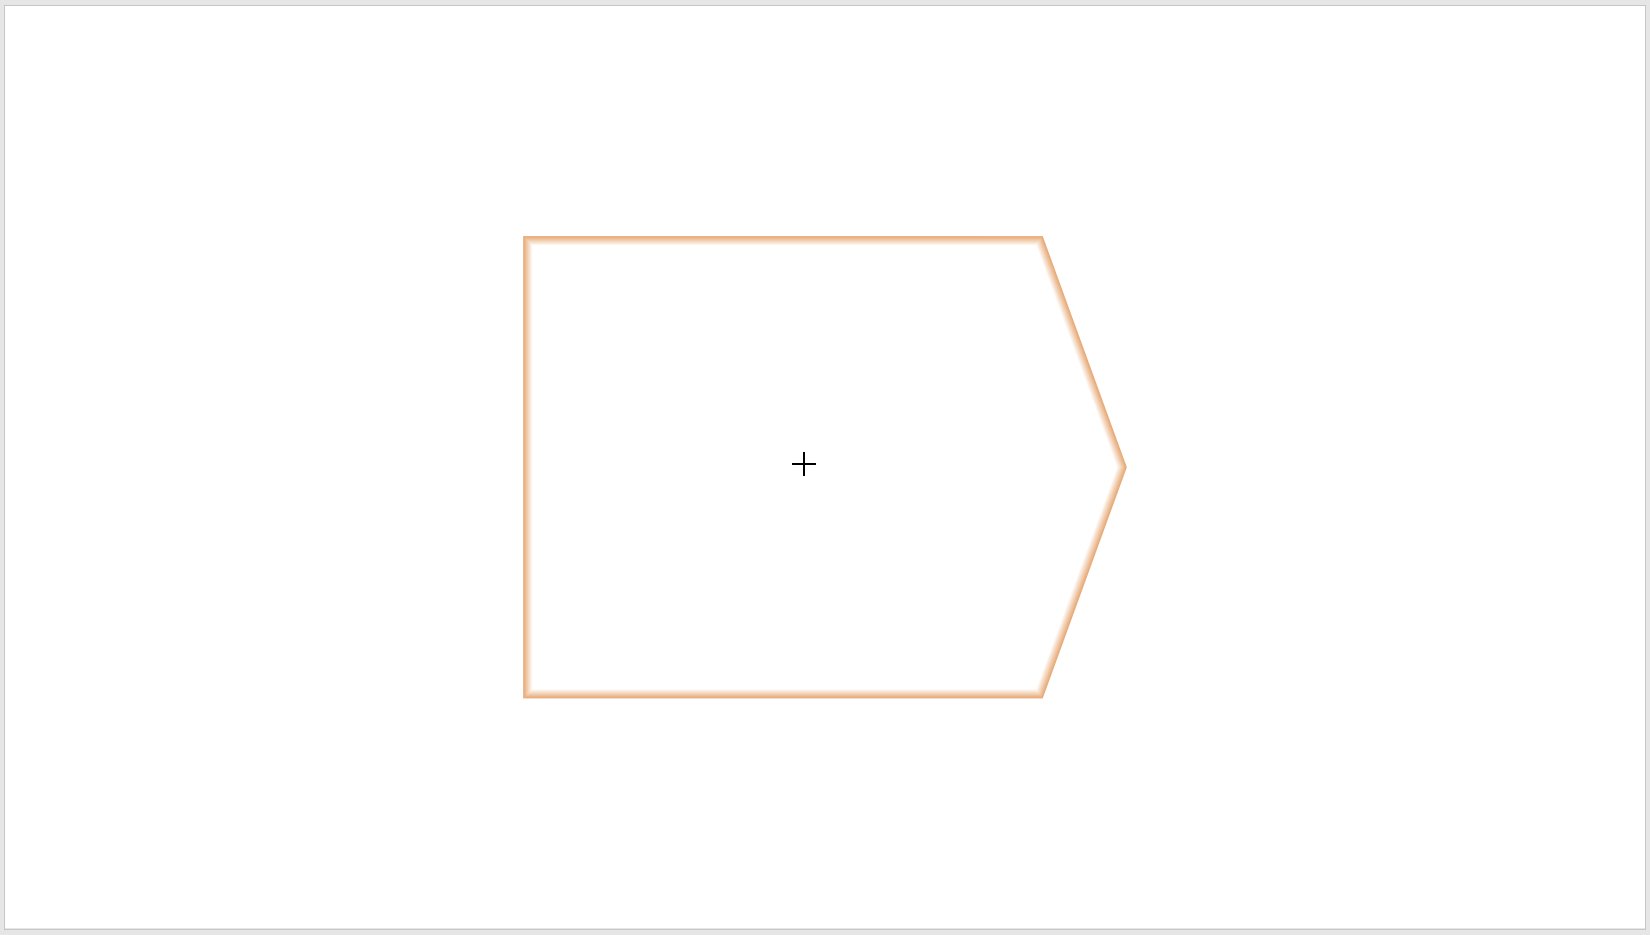 contorni dei segnaposto visualizzati quando si inserisce un pentagono.